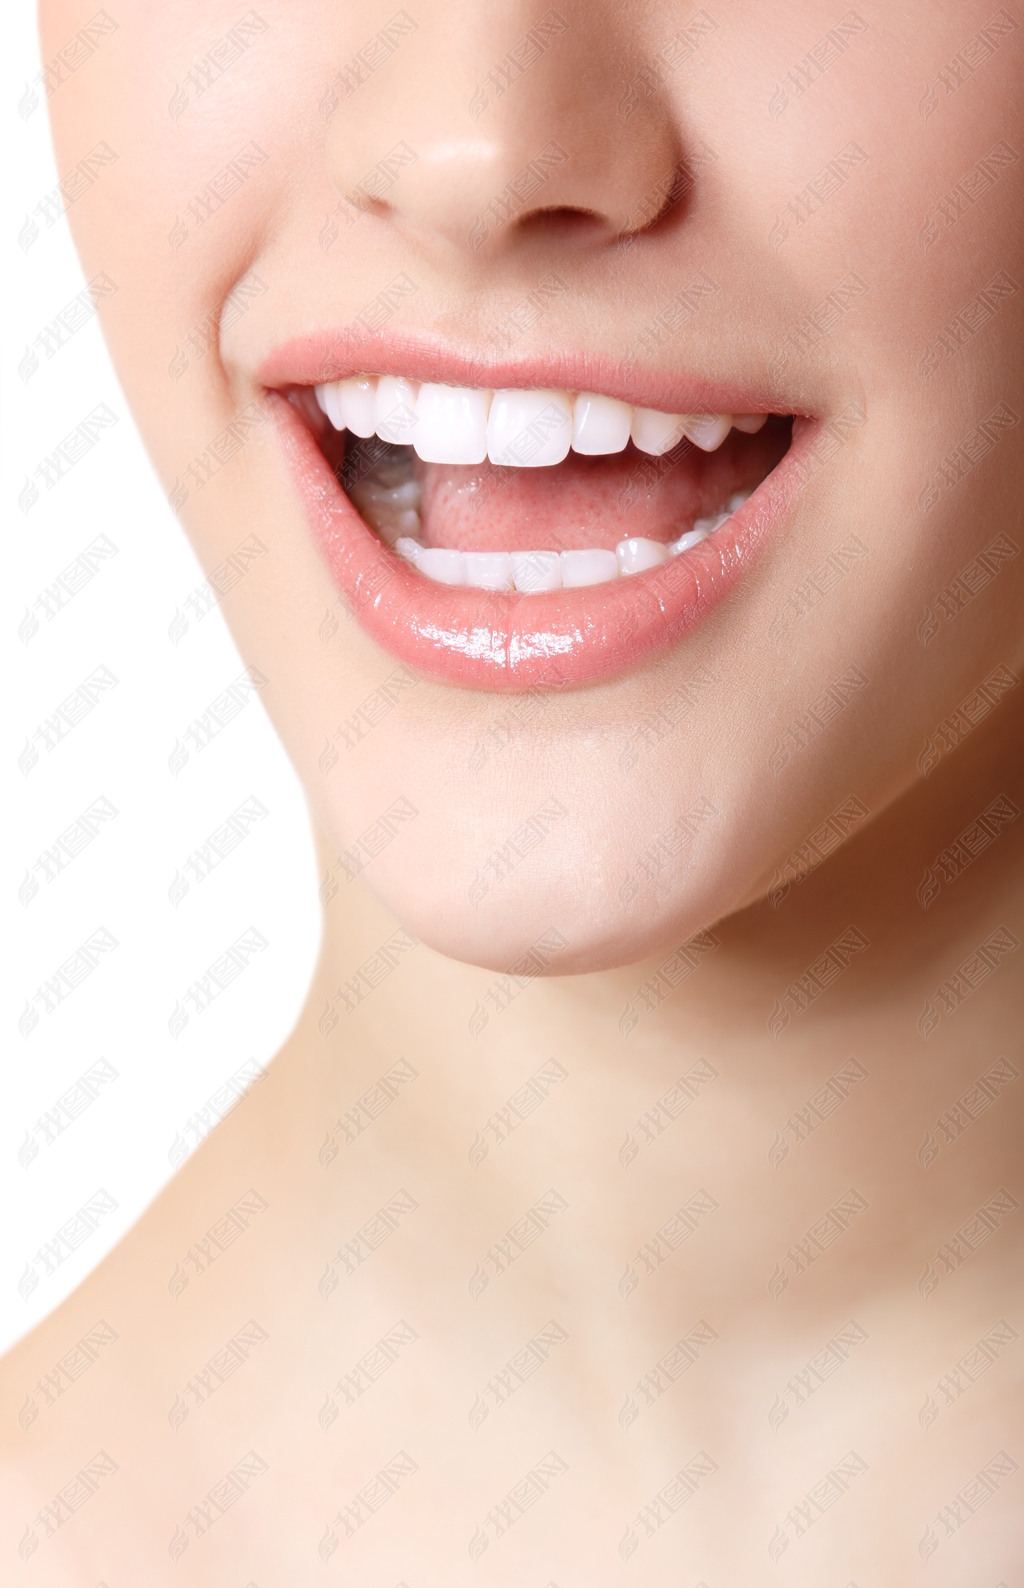 原创完美的笑容的漂亮的女人和大健康洁白的牙齿版权可商用